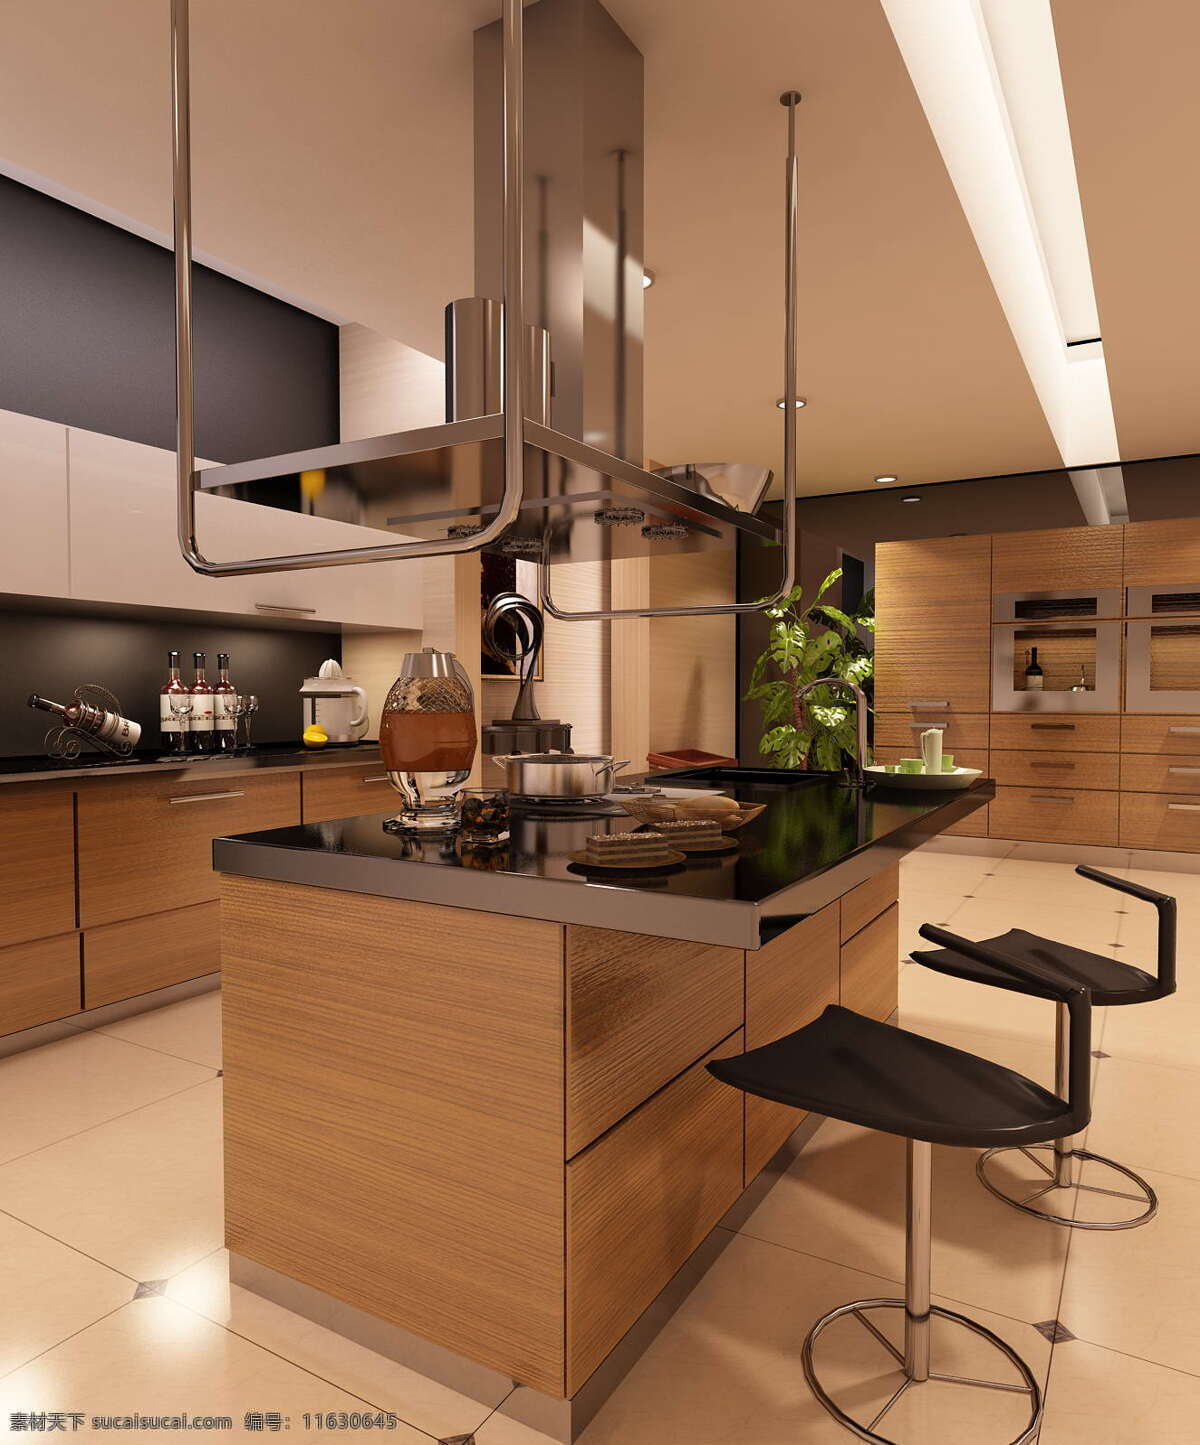 现代主义 简约 风格 厨房 夜景 简约风格 现代 简雅 时尚 室内设计 环境设计